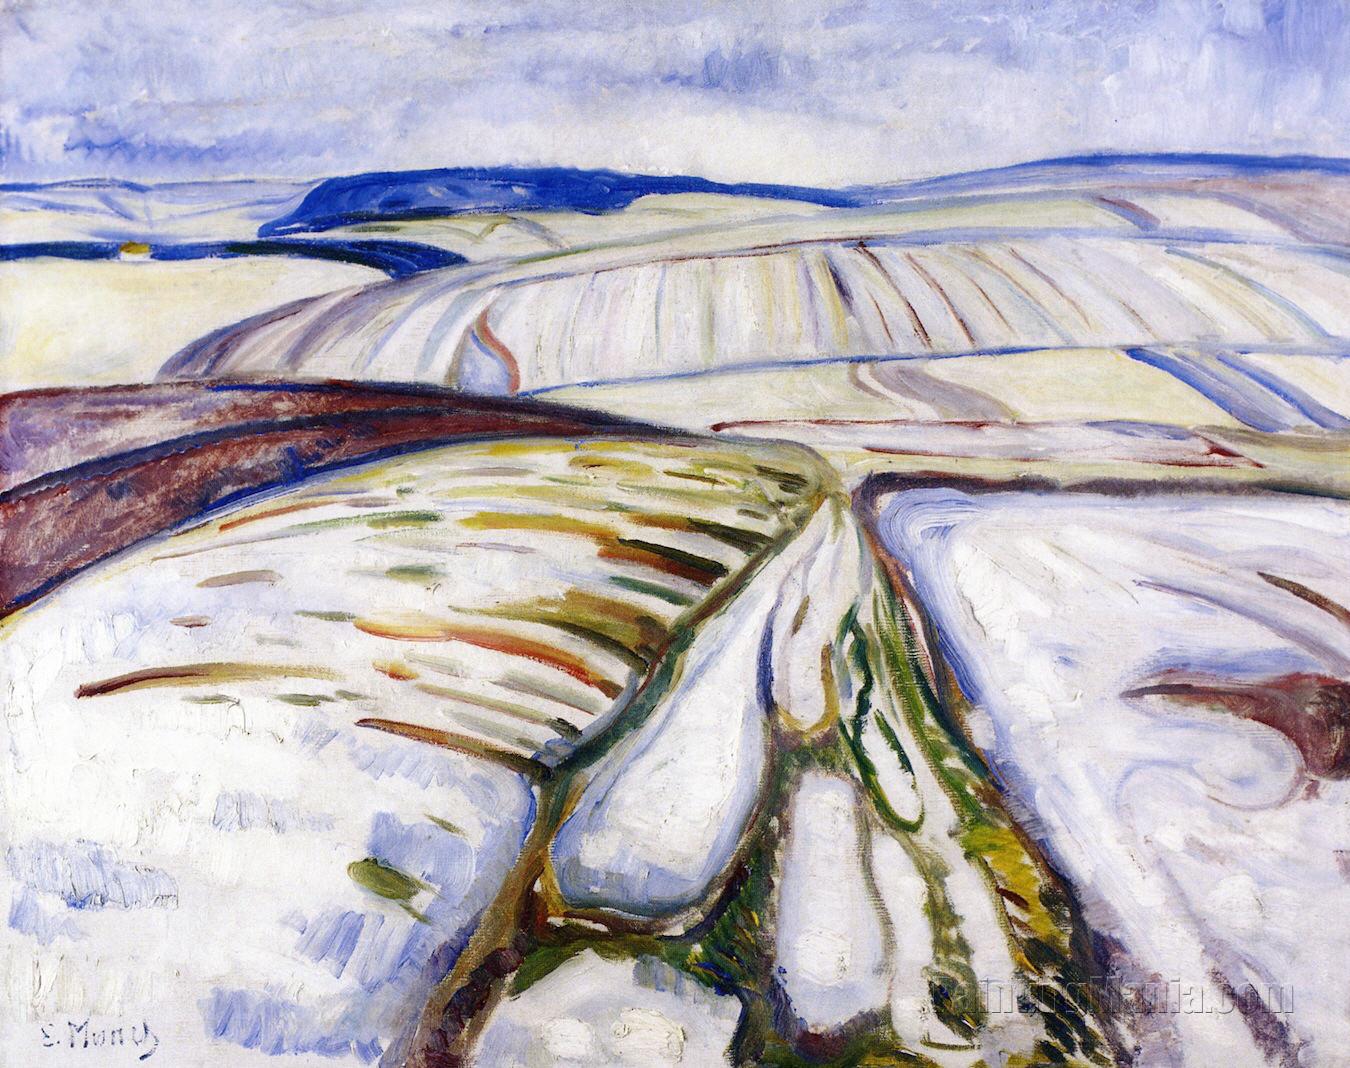 Snow Landscape, Thuringen 1906